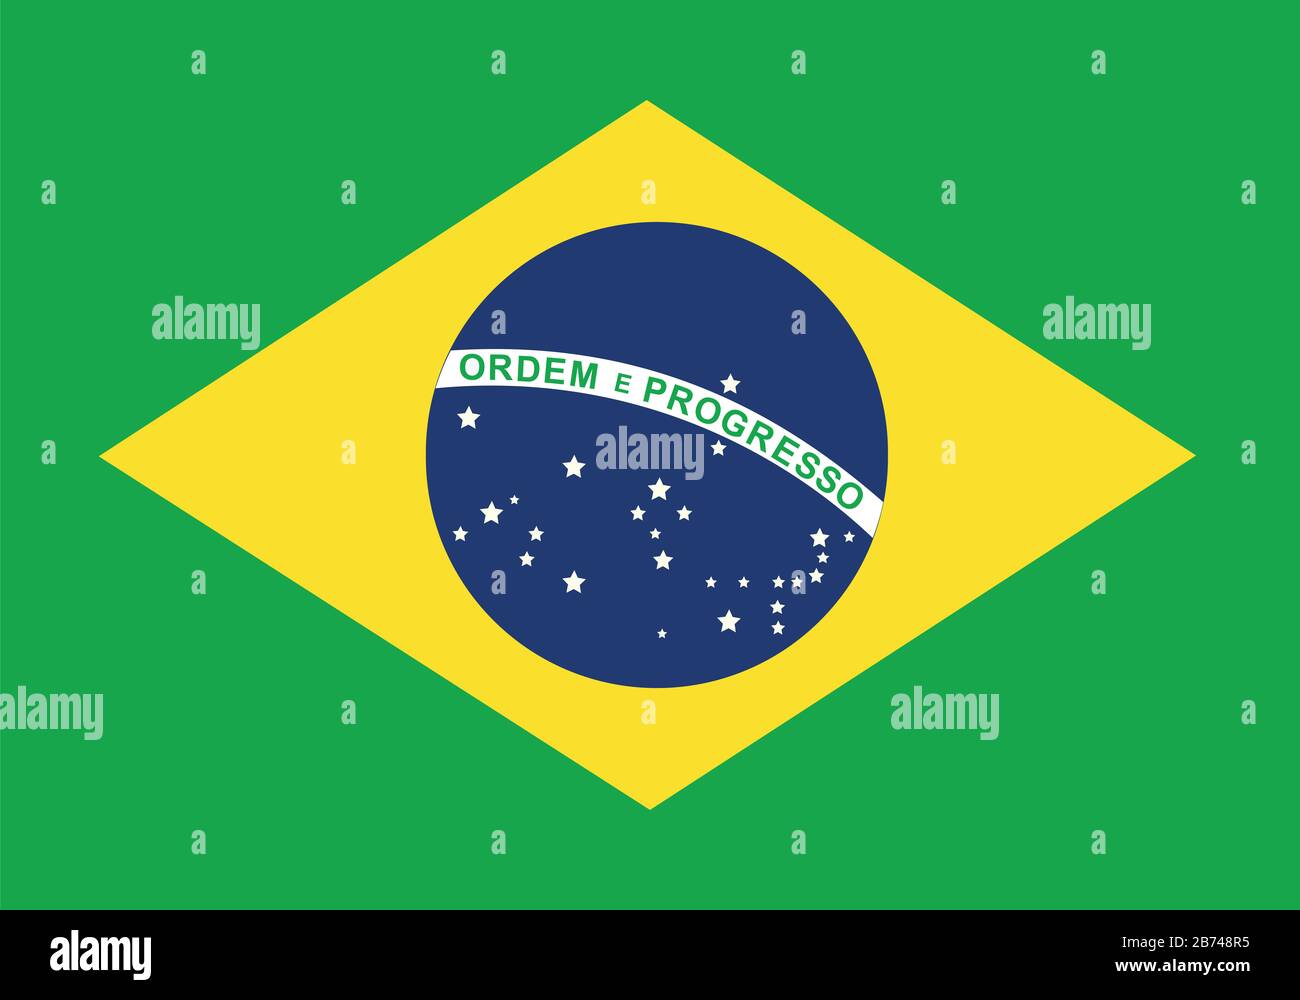 Flagge Brasiliens - Standardverhältnis der brasilianischen Flagge - True RGB-Farbmodus Stockfoto